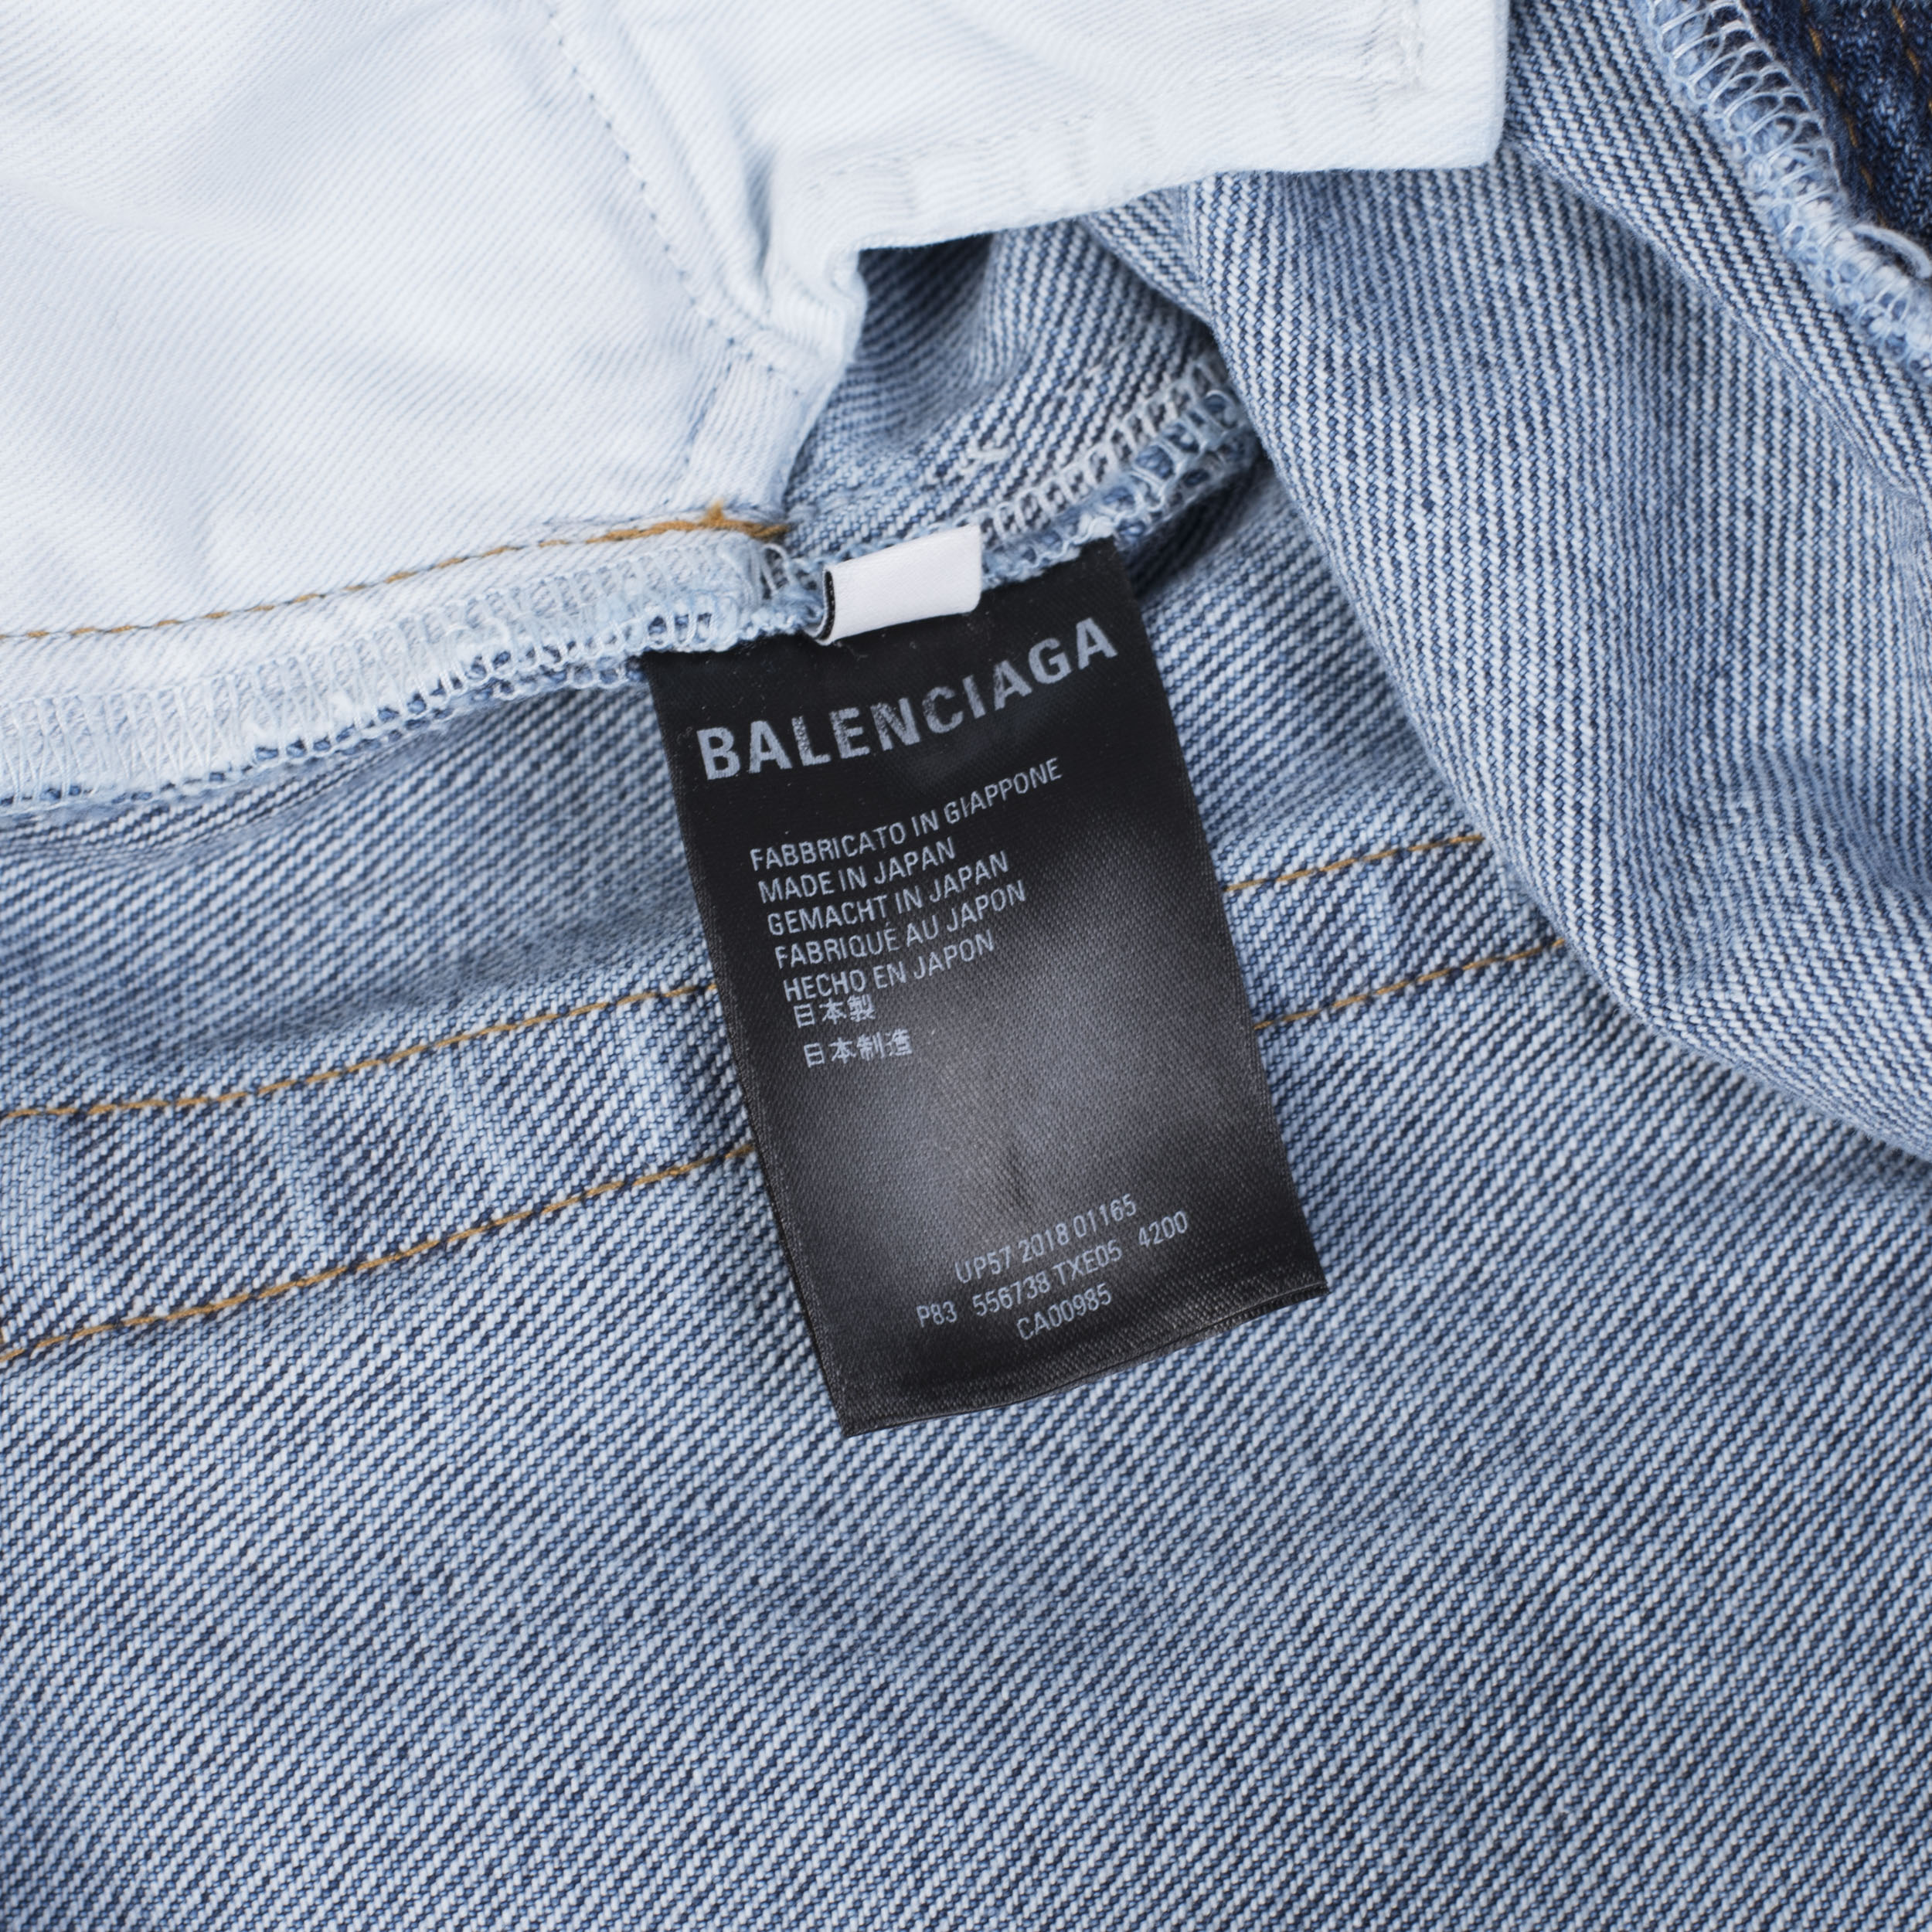 balenciaga jeans ebay